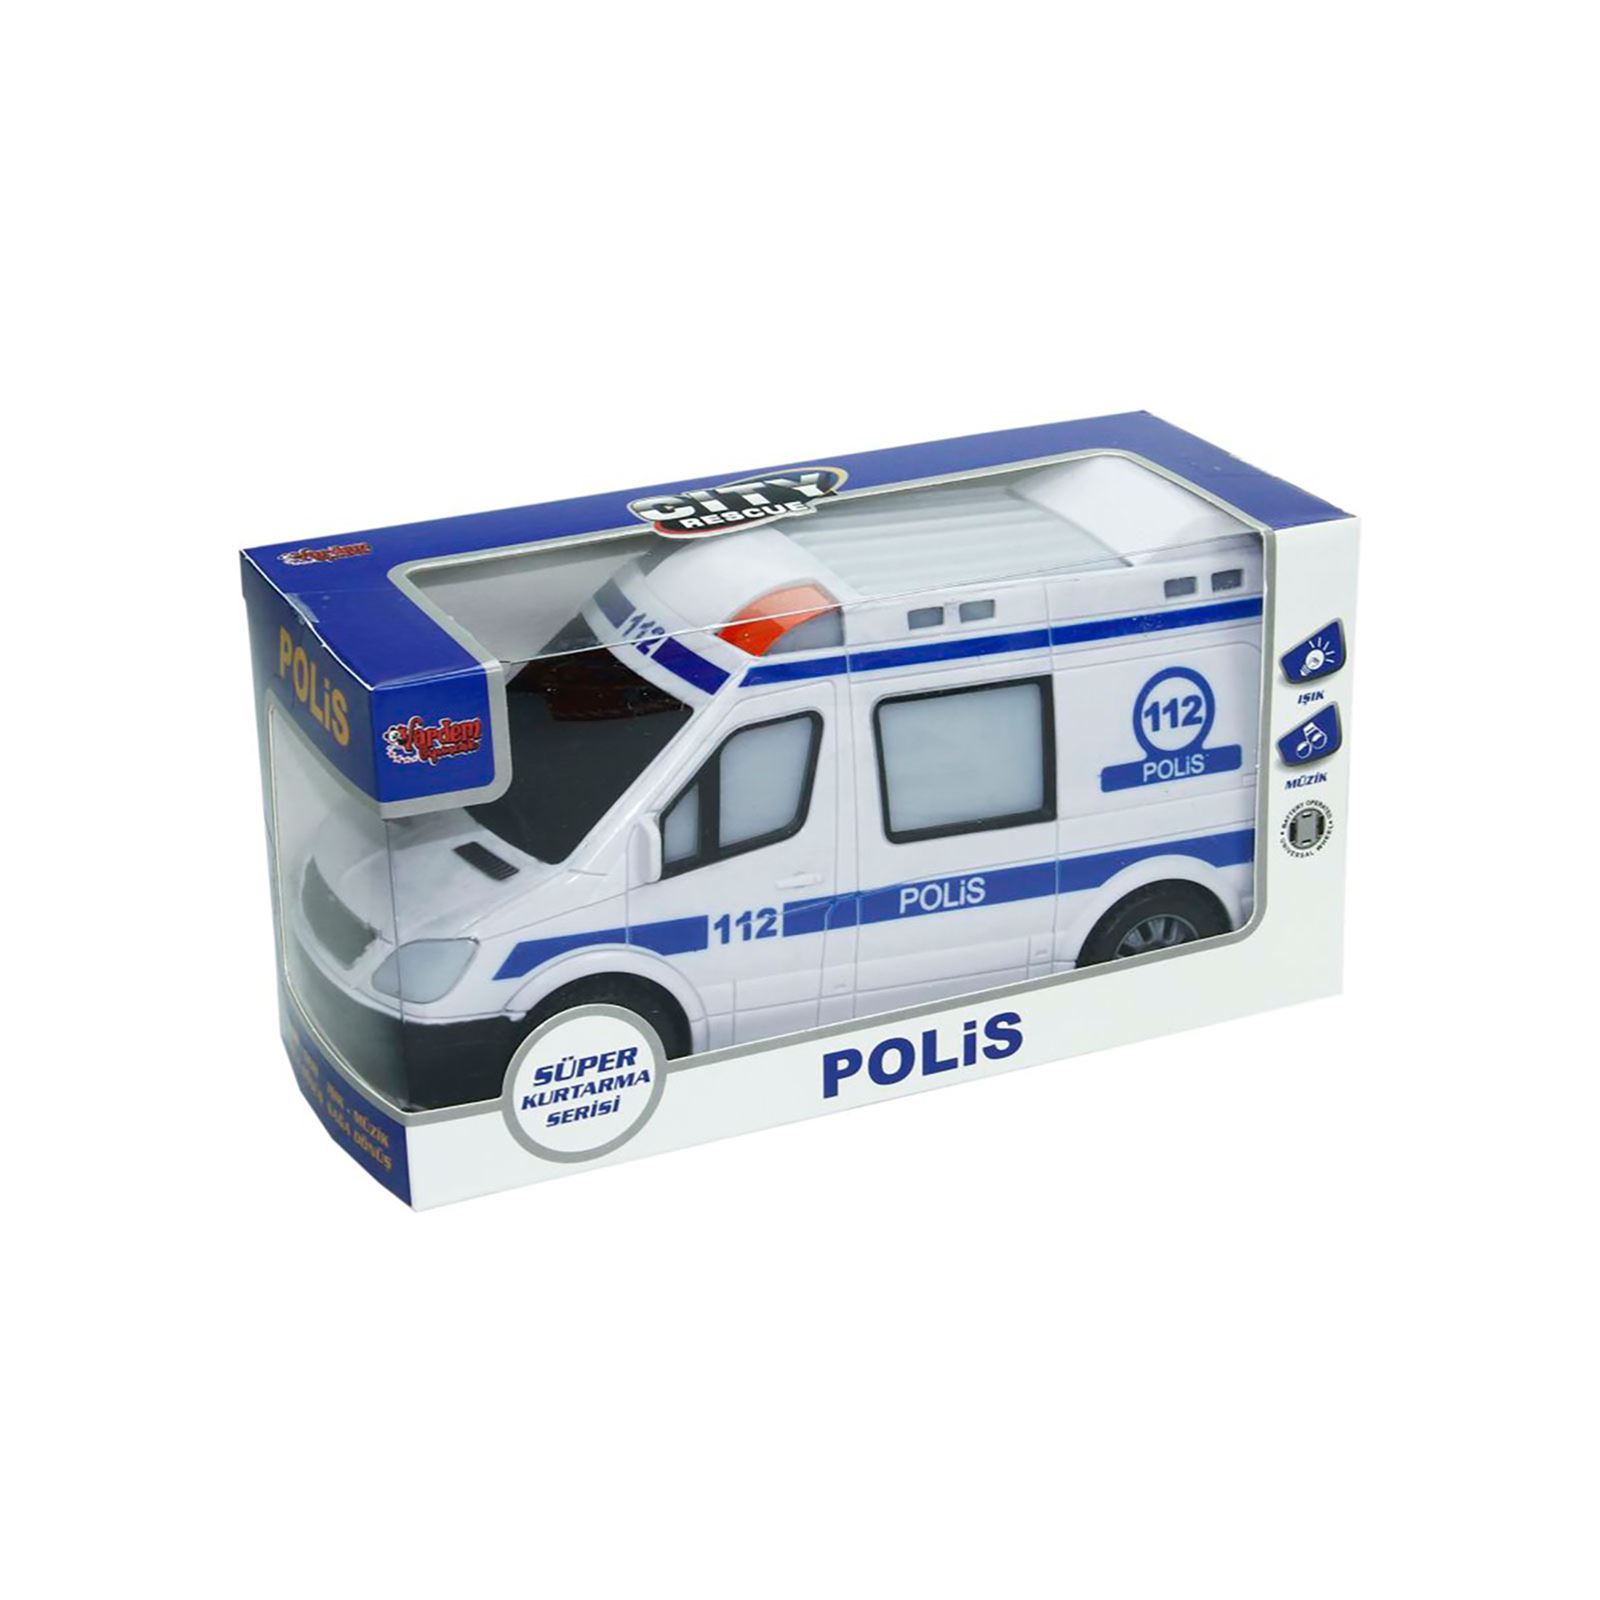 Vardem Oyuncak Sesli Ve Işıklı Polis Arabası Beyaz